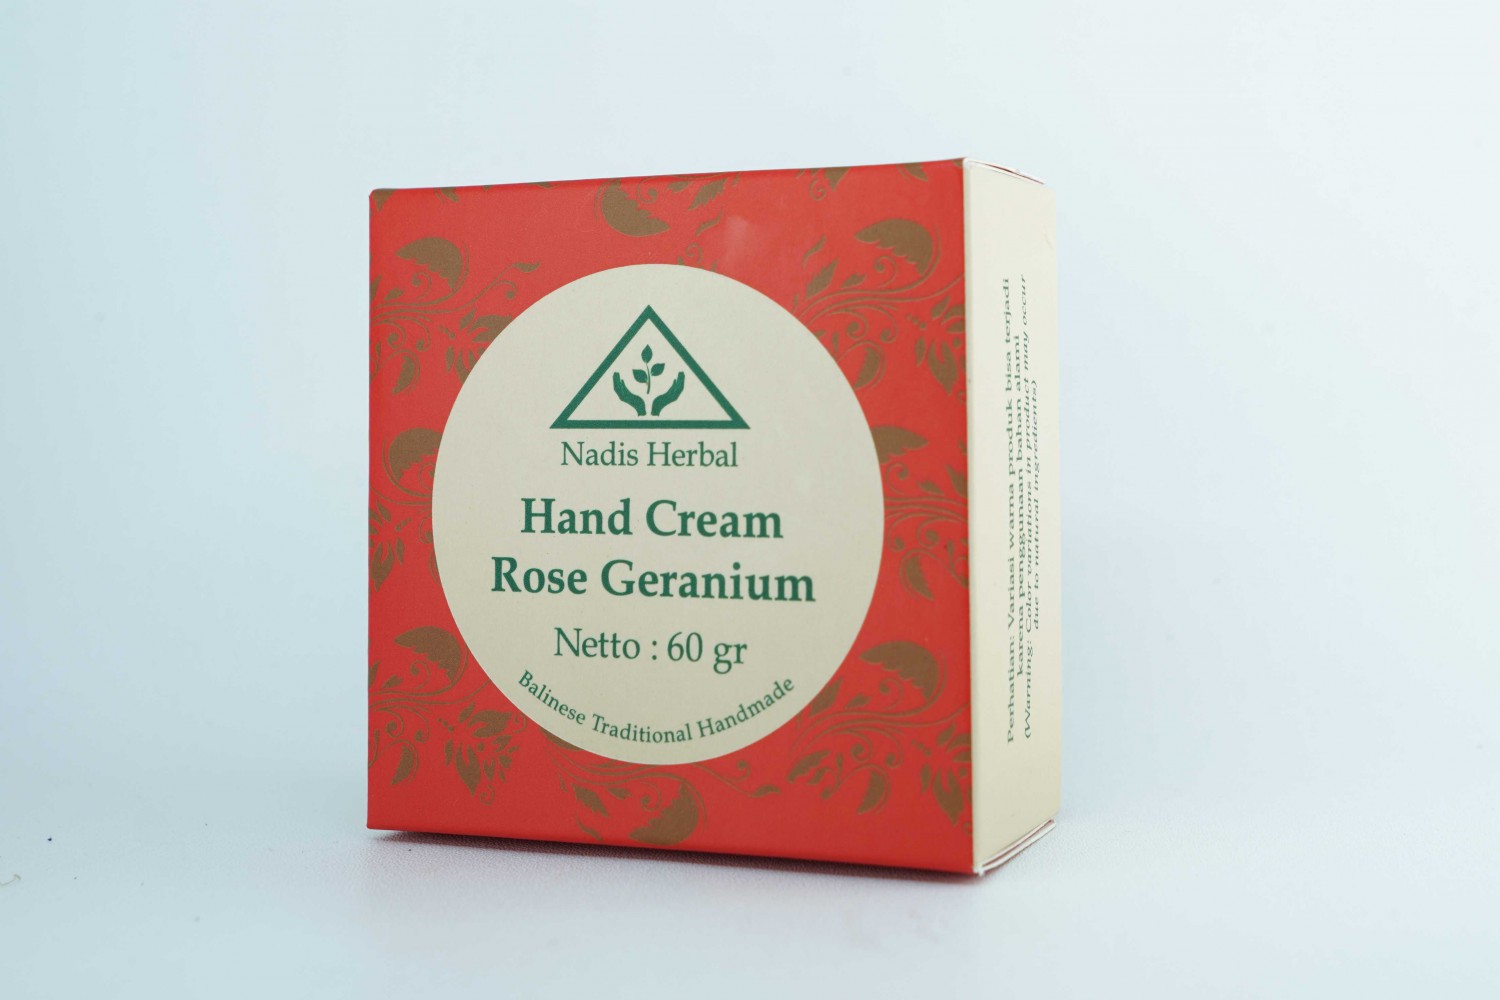 Hand Cream Rose Geranium